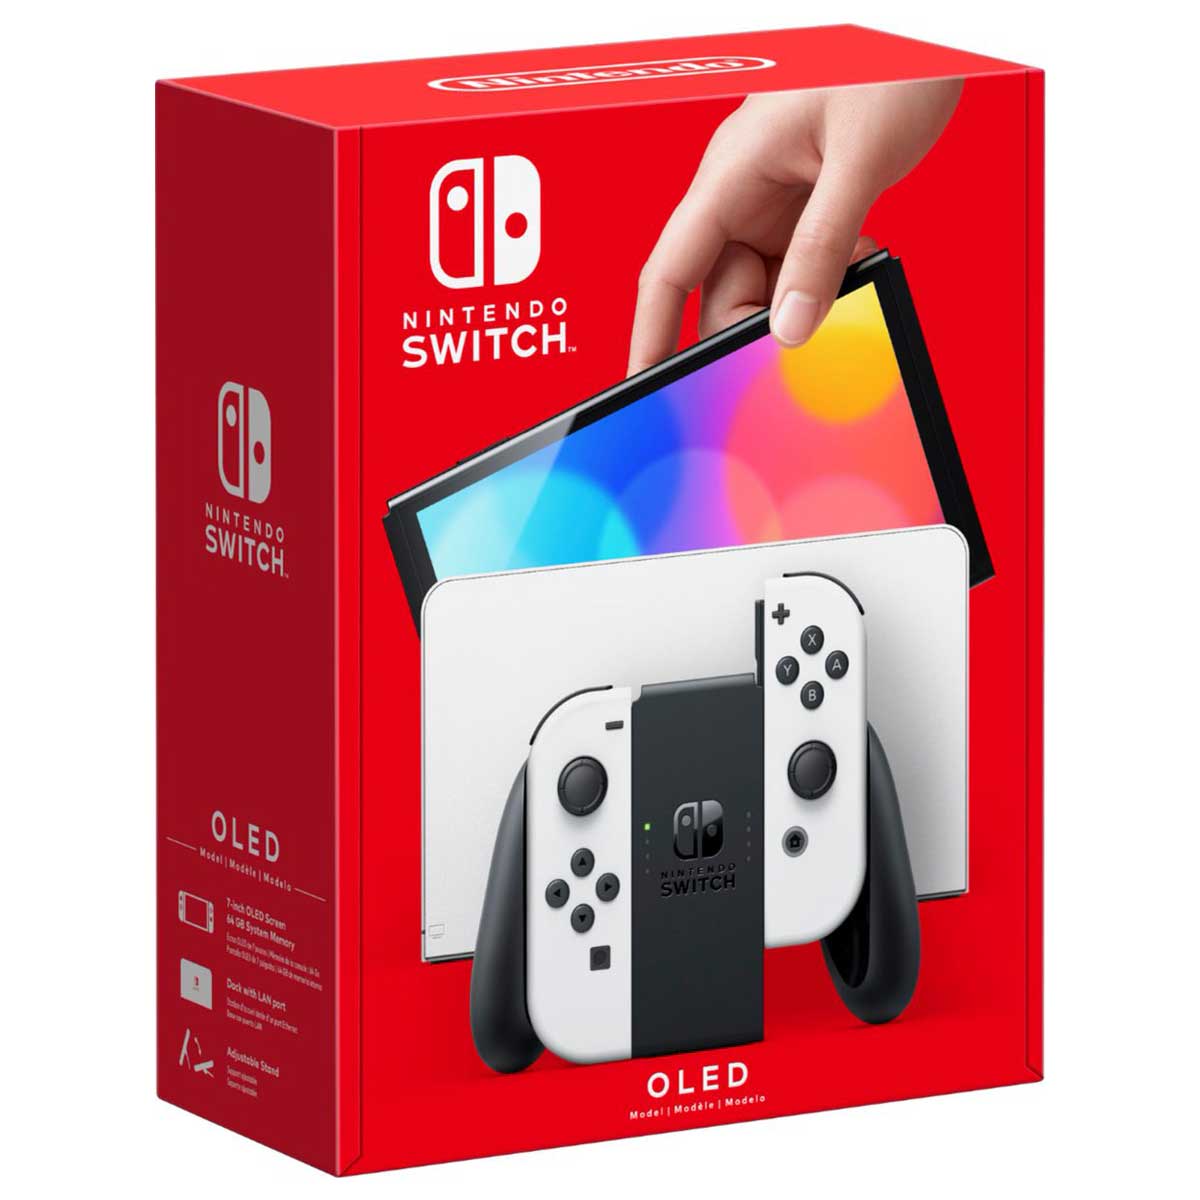 خرید کنسول بازی نینتدو سوییچ Nintendo Switch OLED سفید